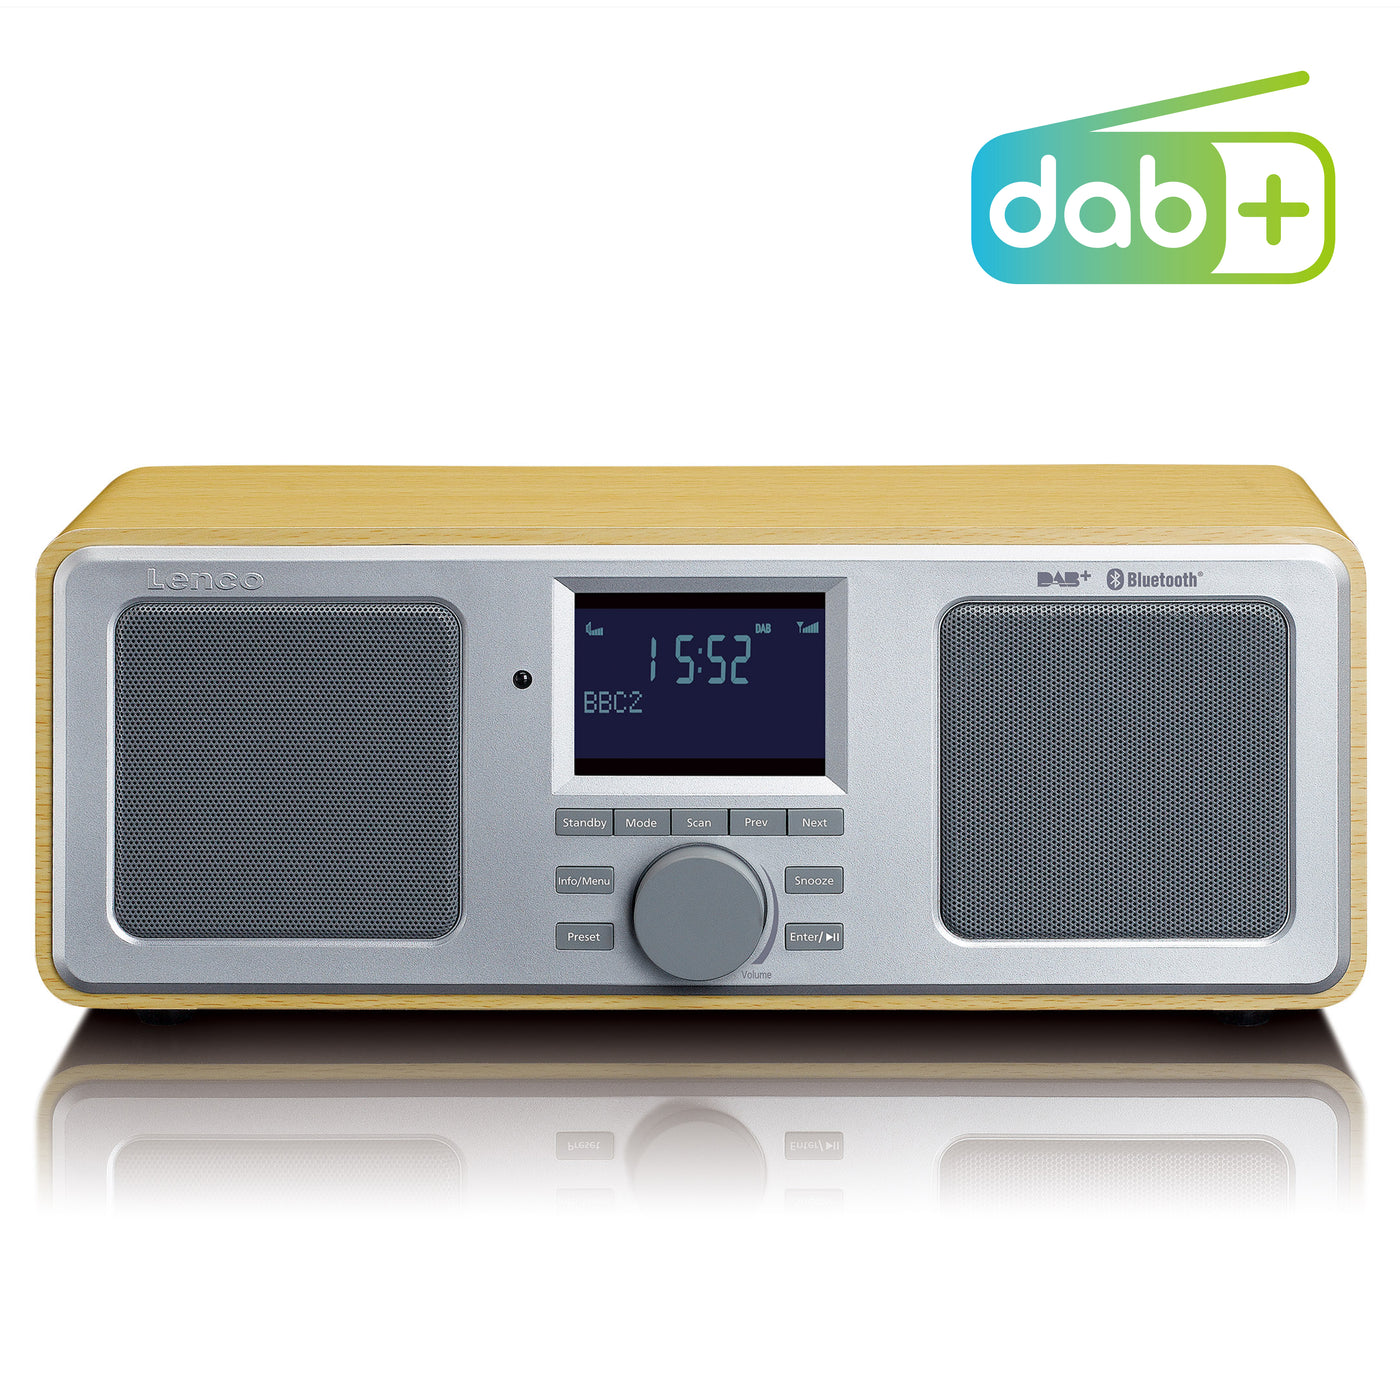 Lenco DAR-015WD - DAB+ Radio mit Alarmfunktion, UKW und Fernbedienung - Holz